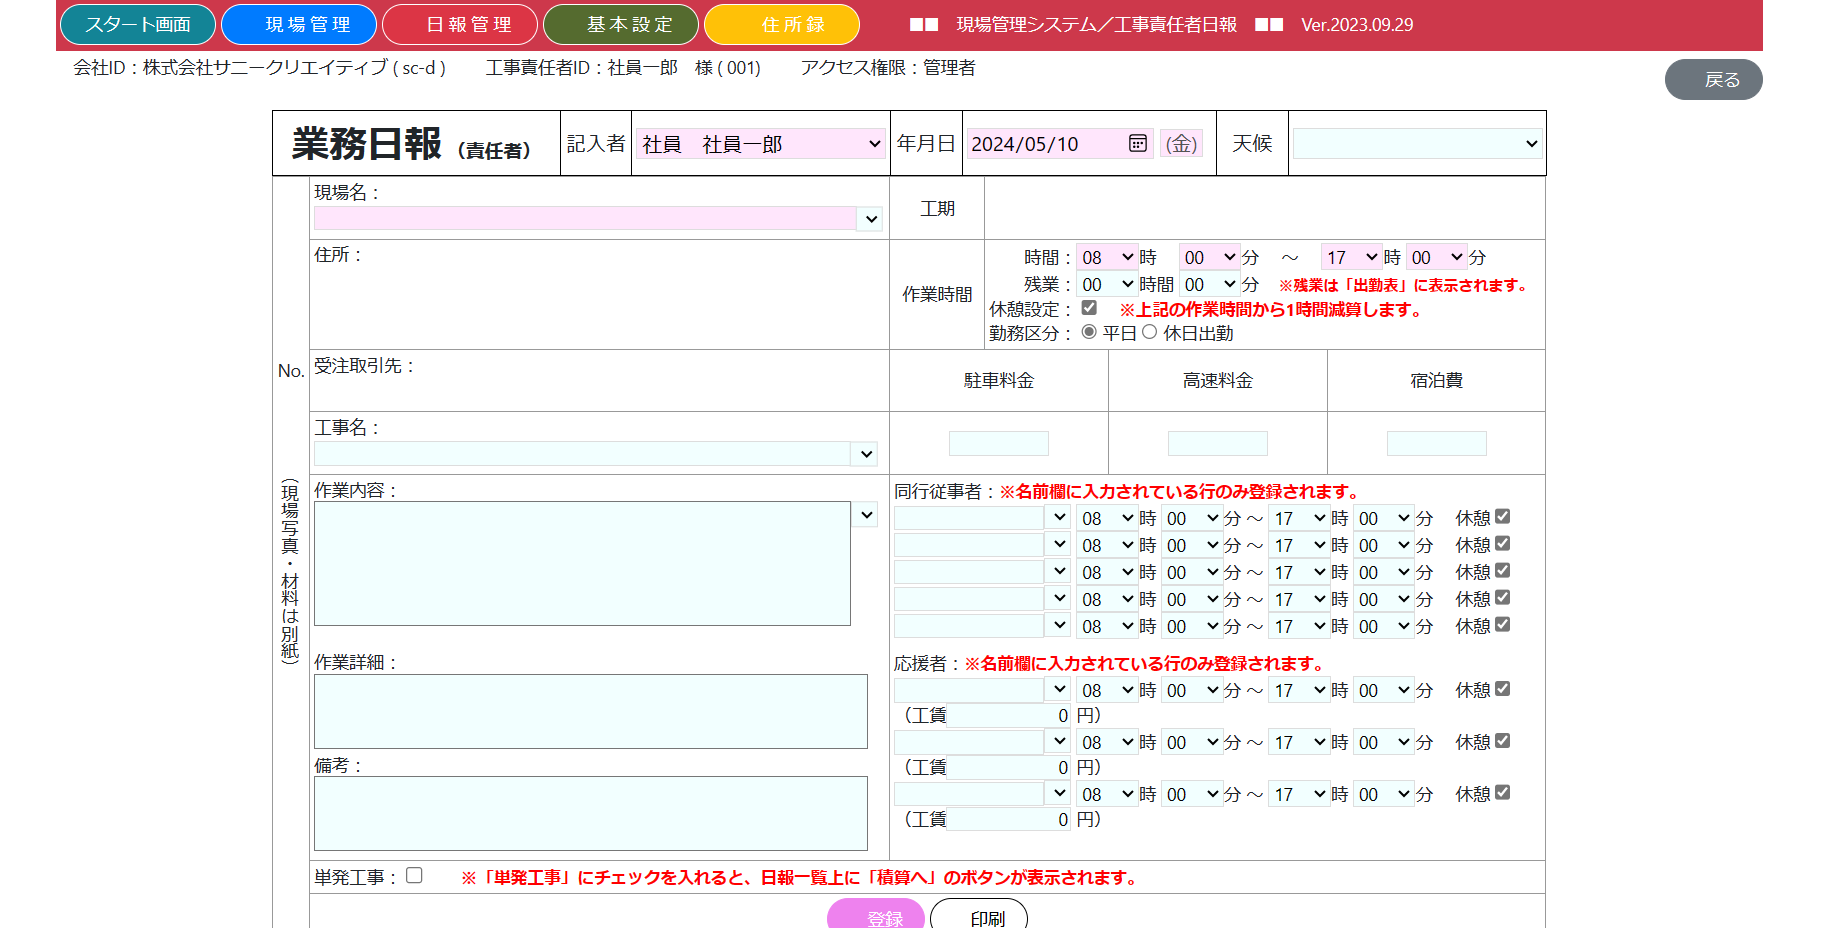 日報ソフト「Lakuda+」の工事責任者日報の画面